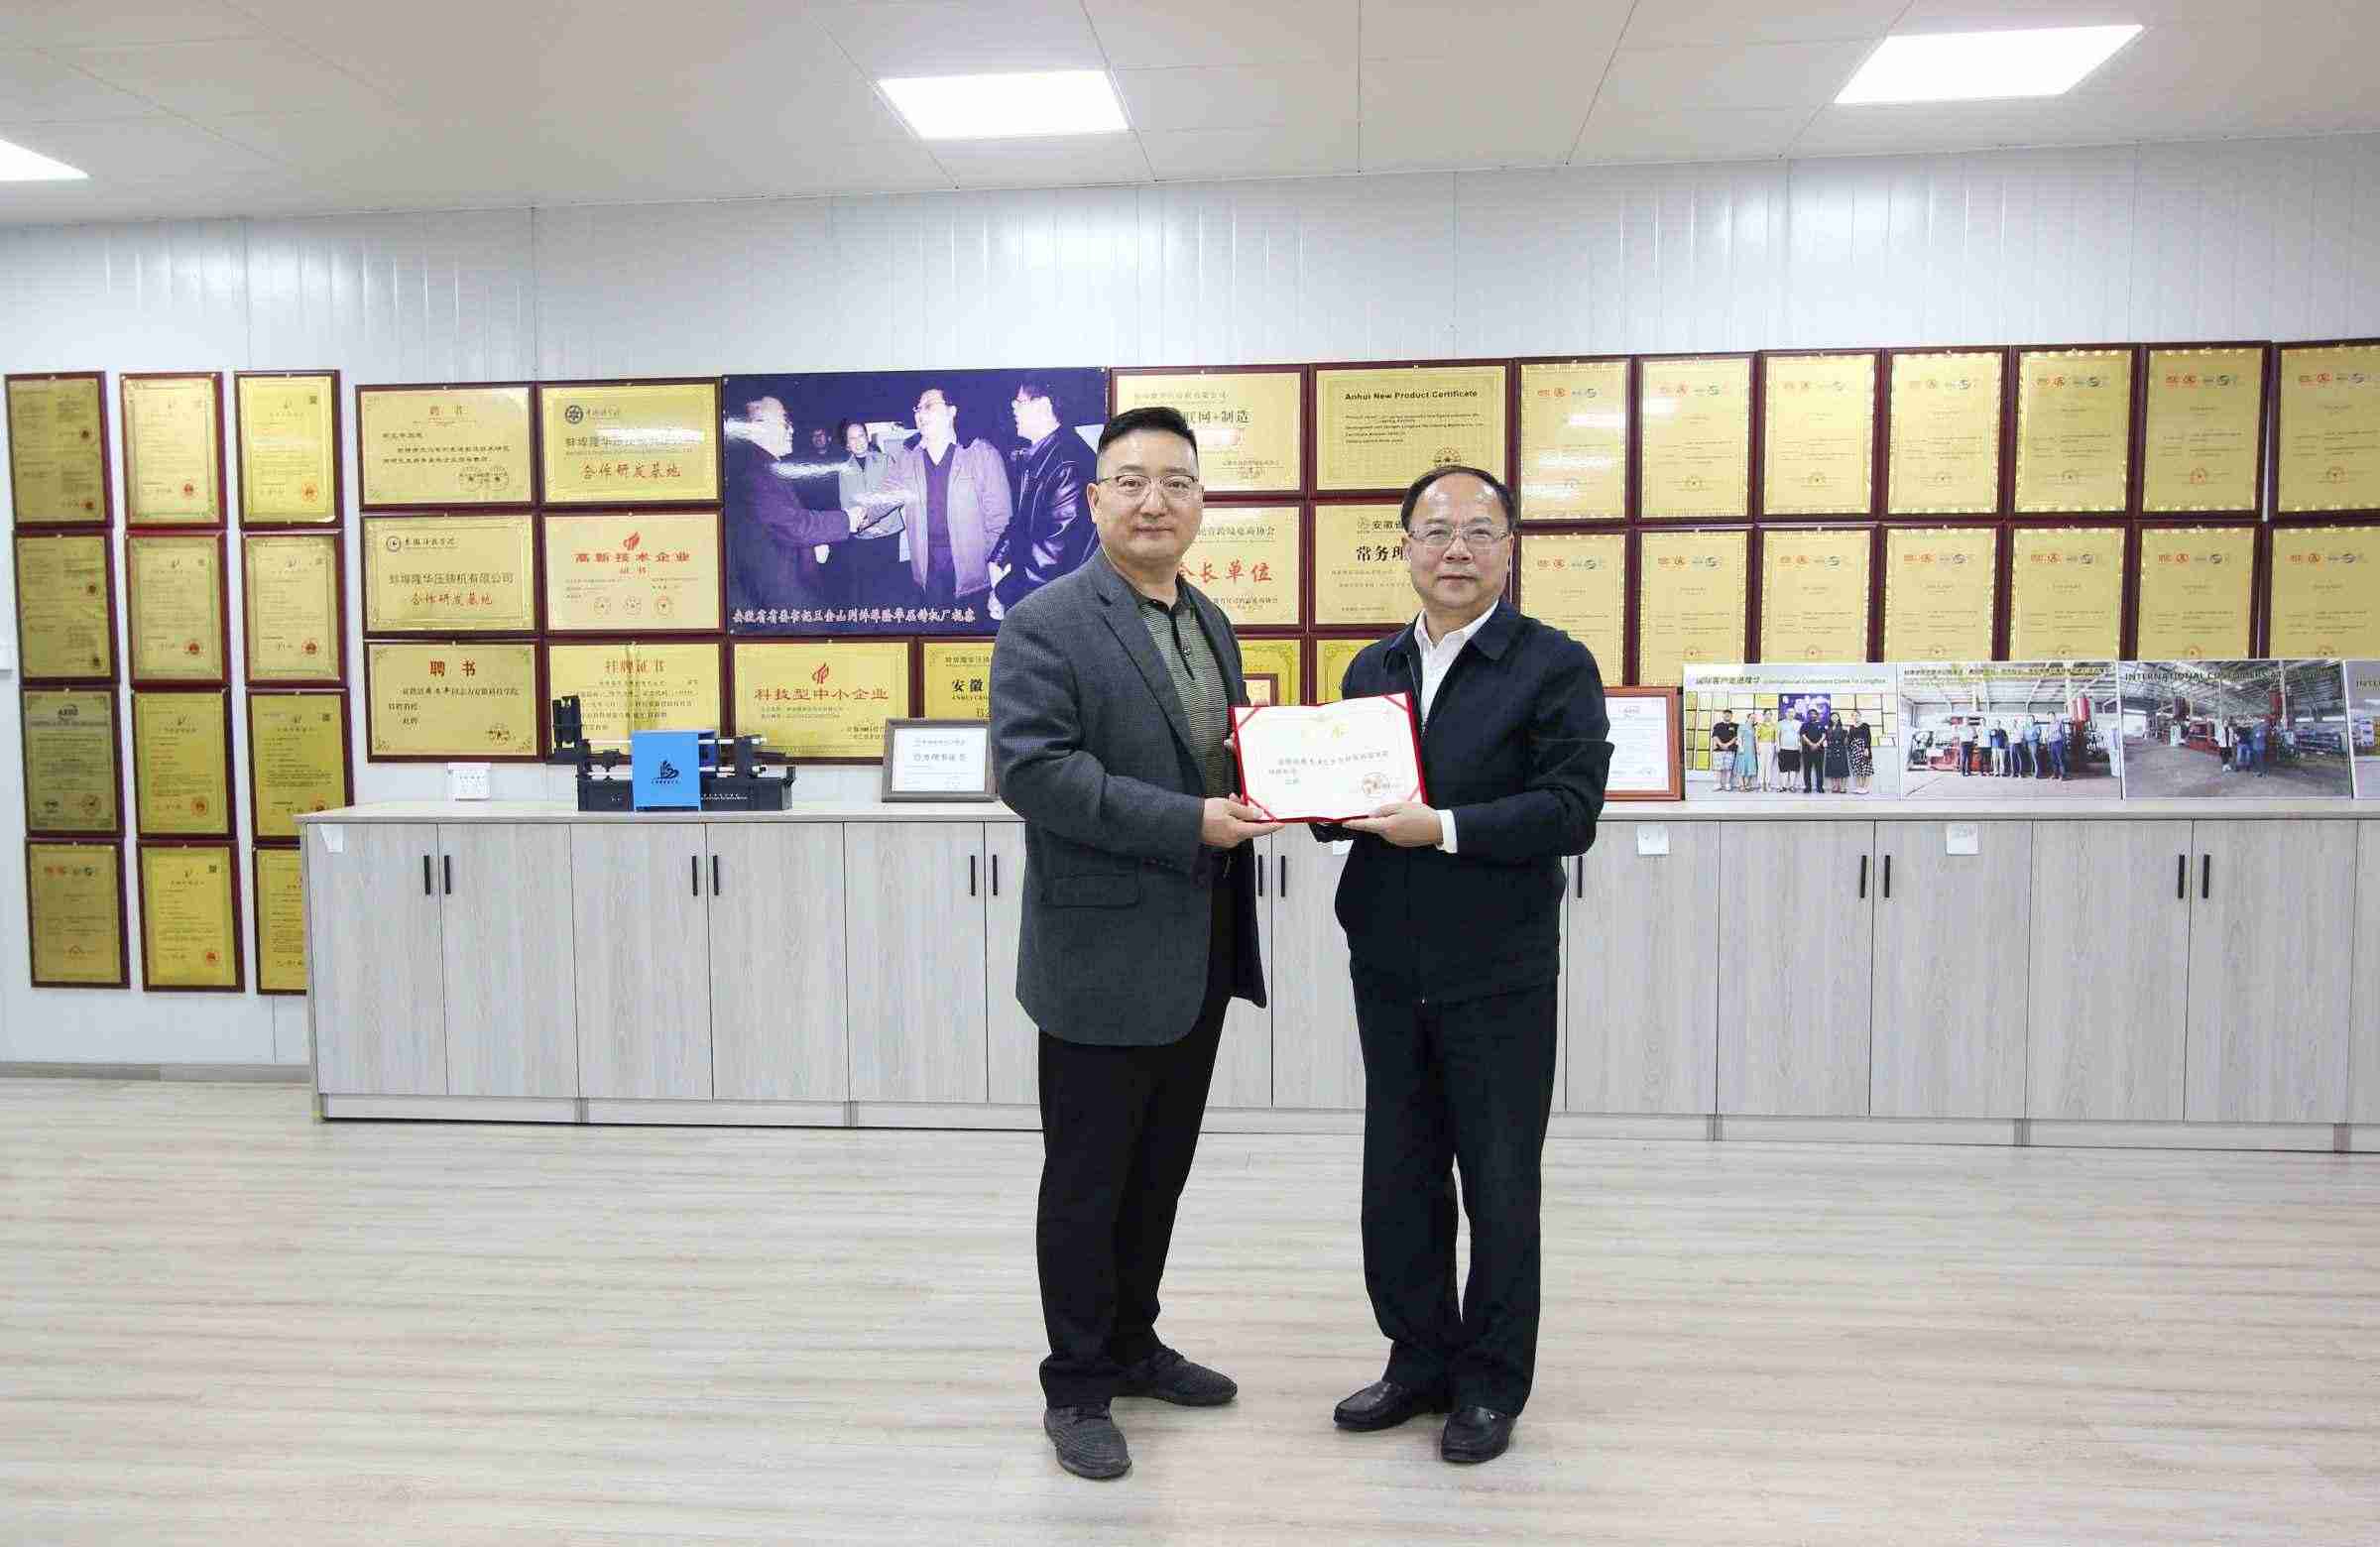 Колледж Бэнбу наградил Бэнбу Лунхуа Чжоу Вэньпина почетной грамотой «Заслуженный профессор»!